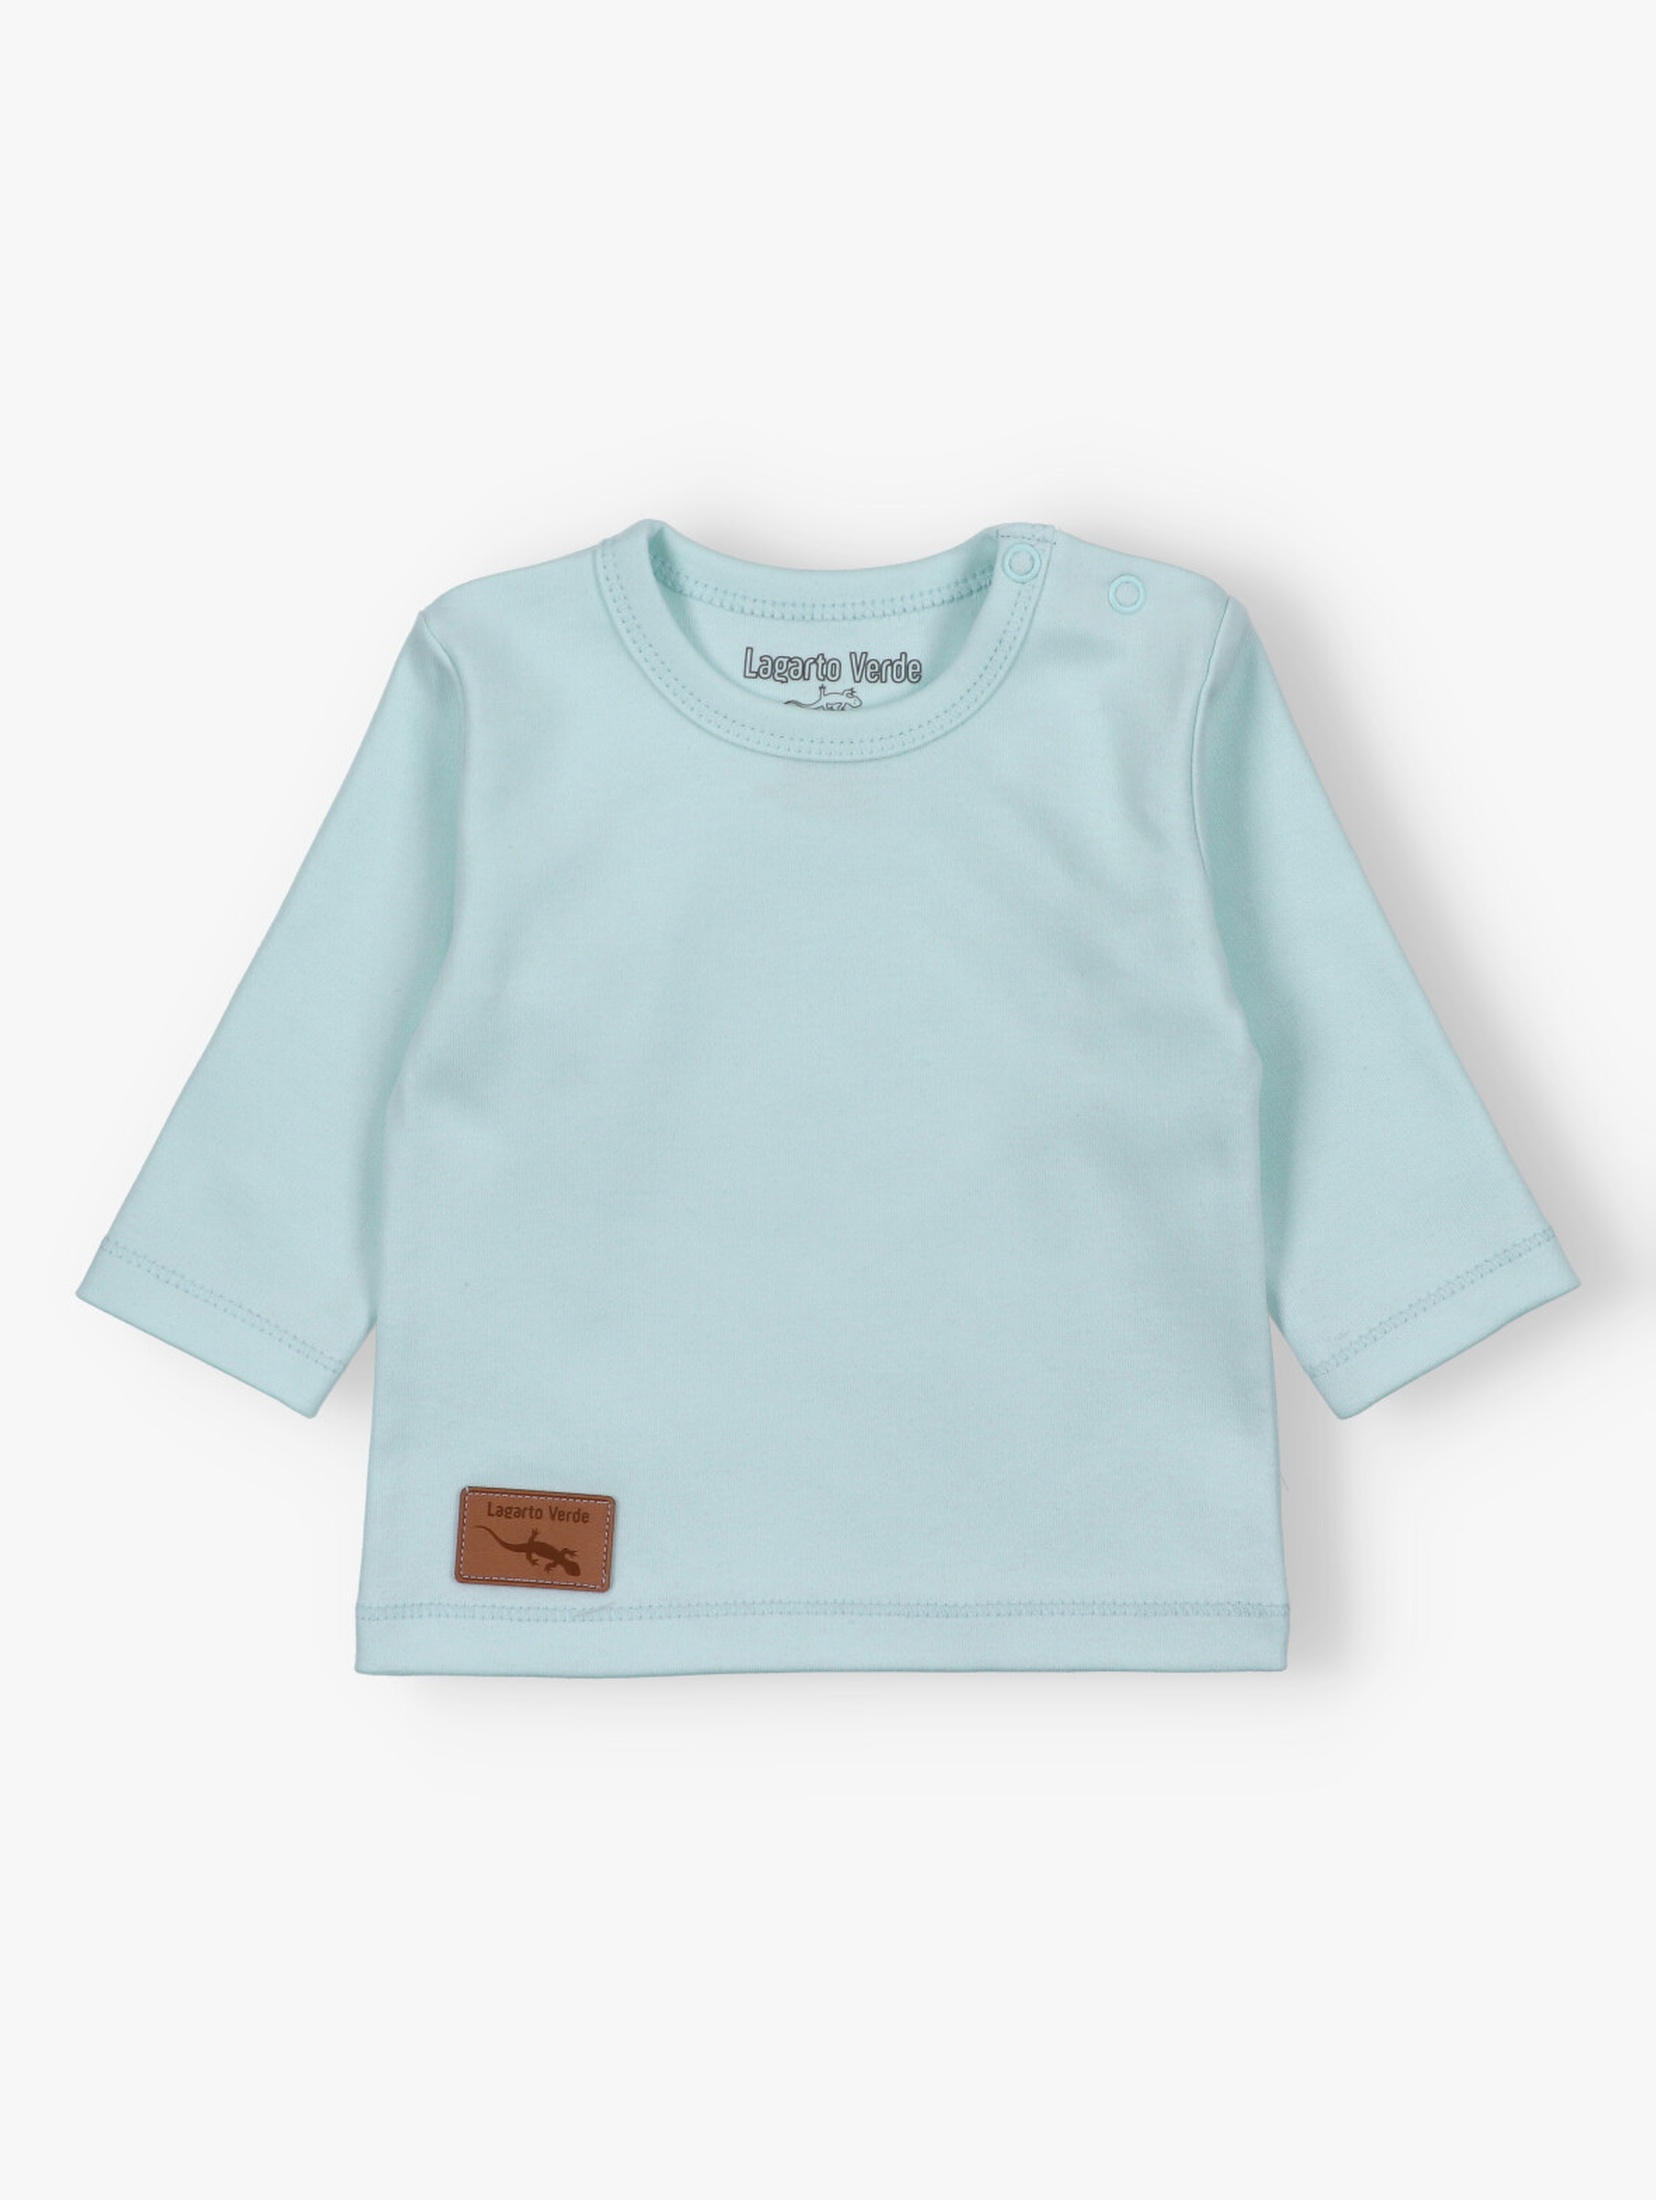 Dziewczęca bluzka niemowlęca - różowa -  Lagarto Verde